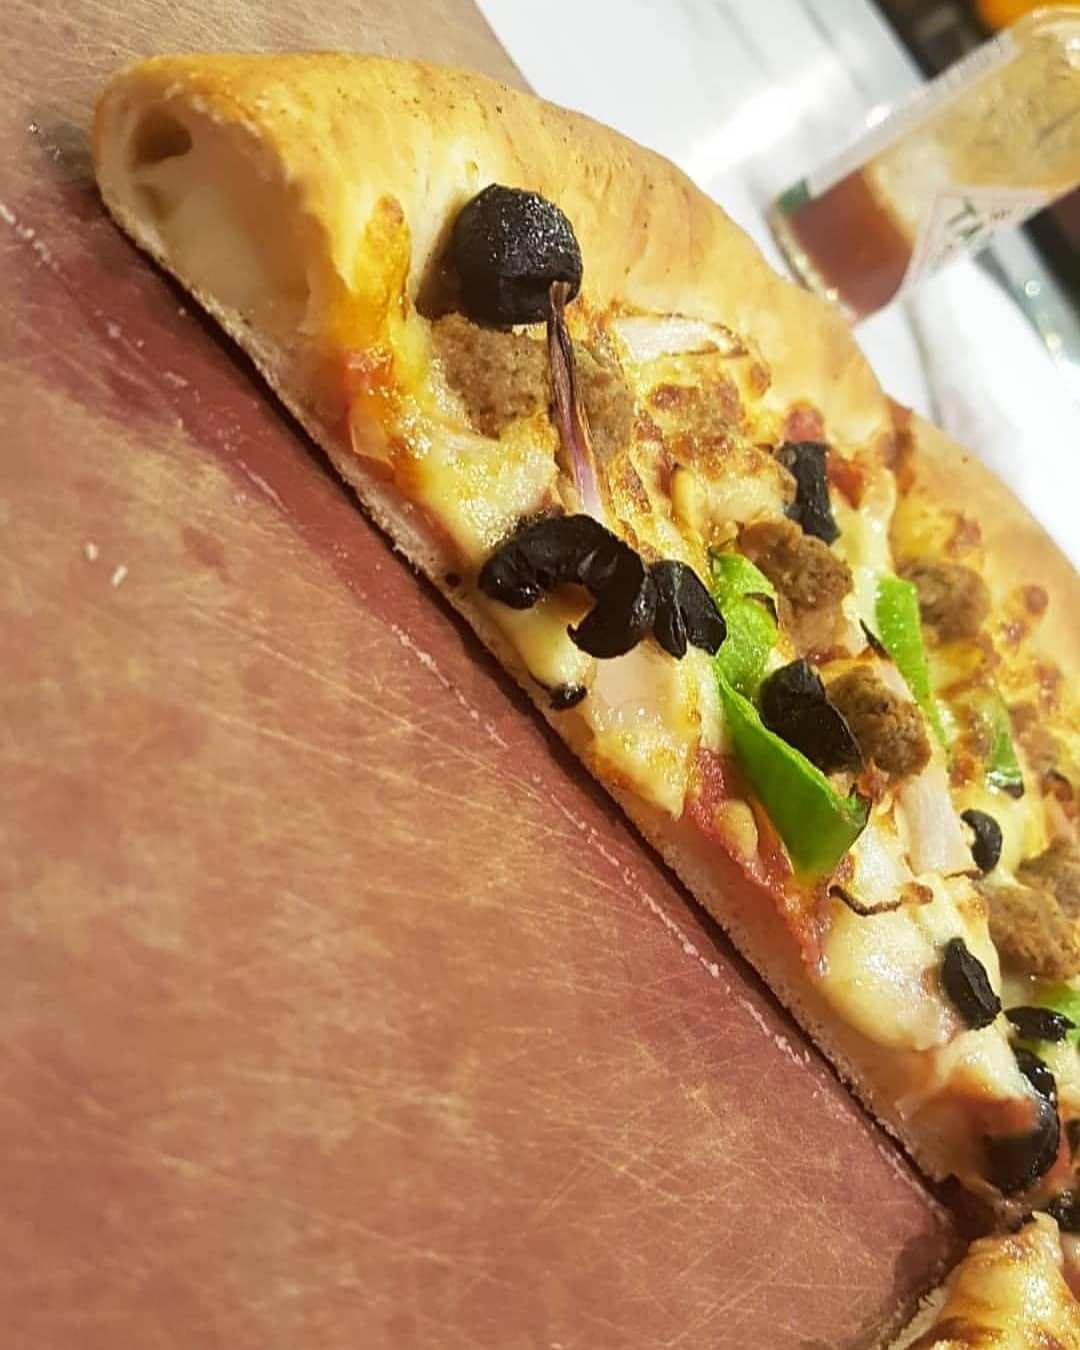 Super supreme @ Pizza Hut - Bahrain